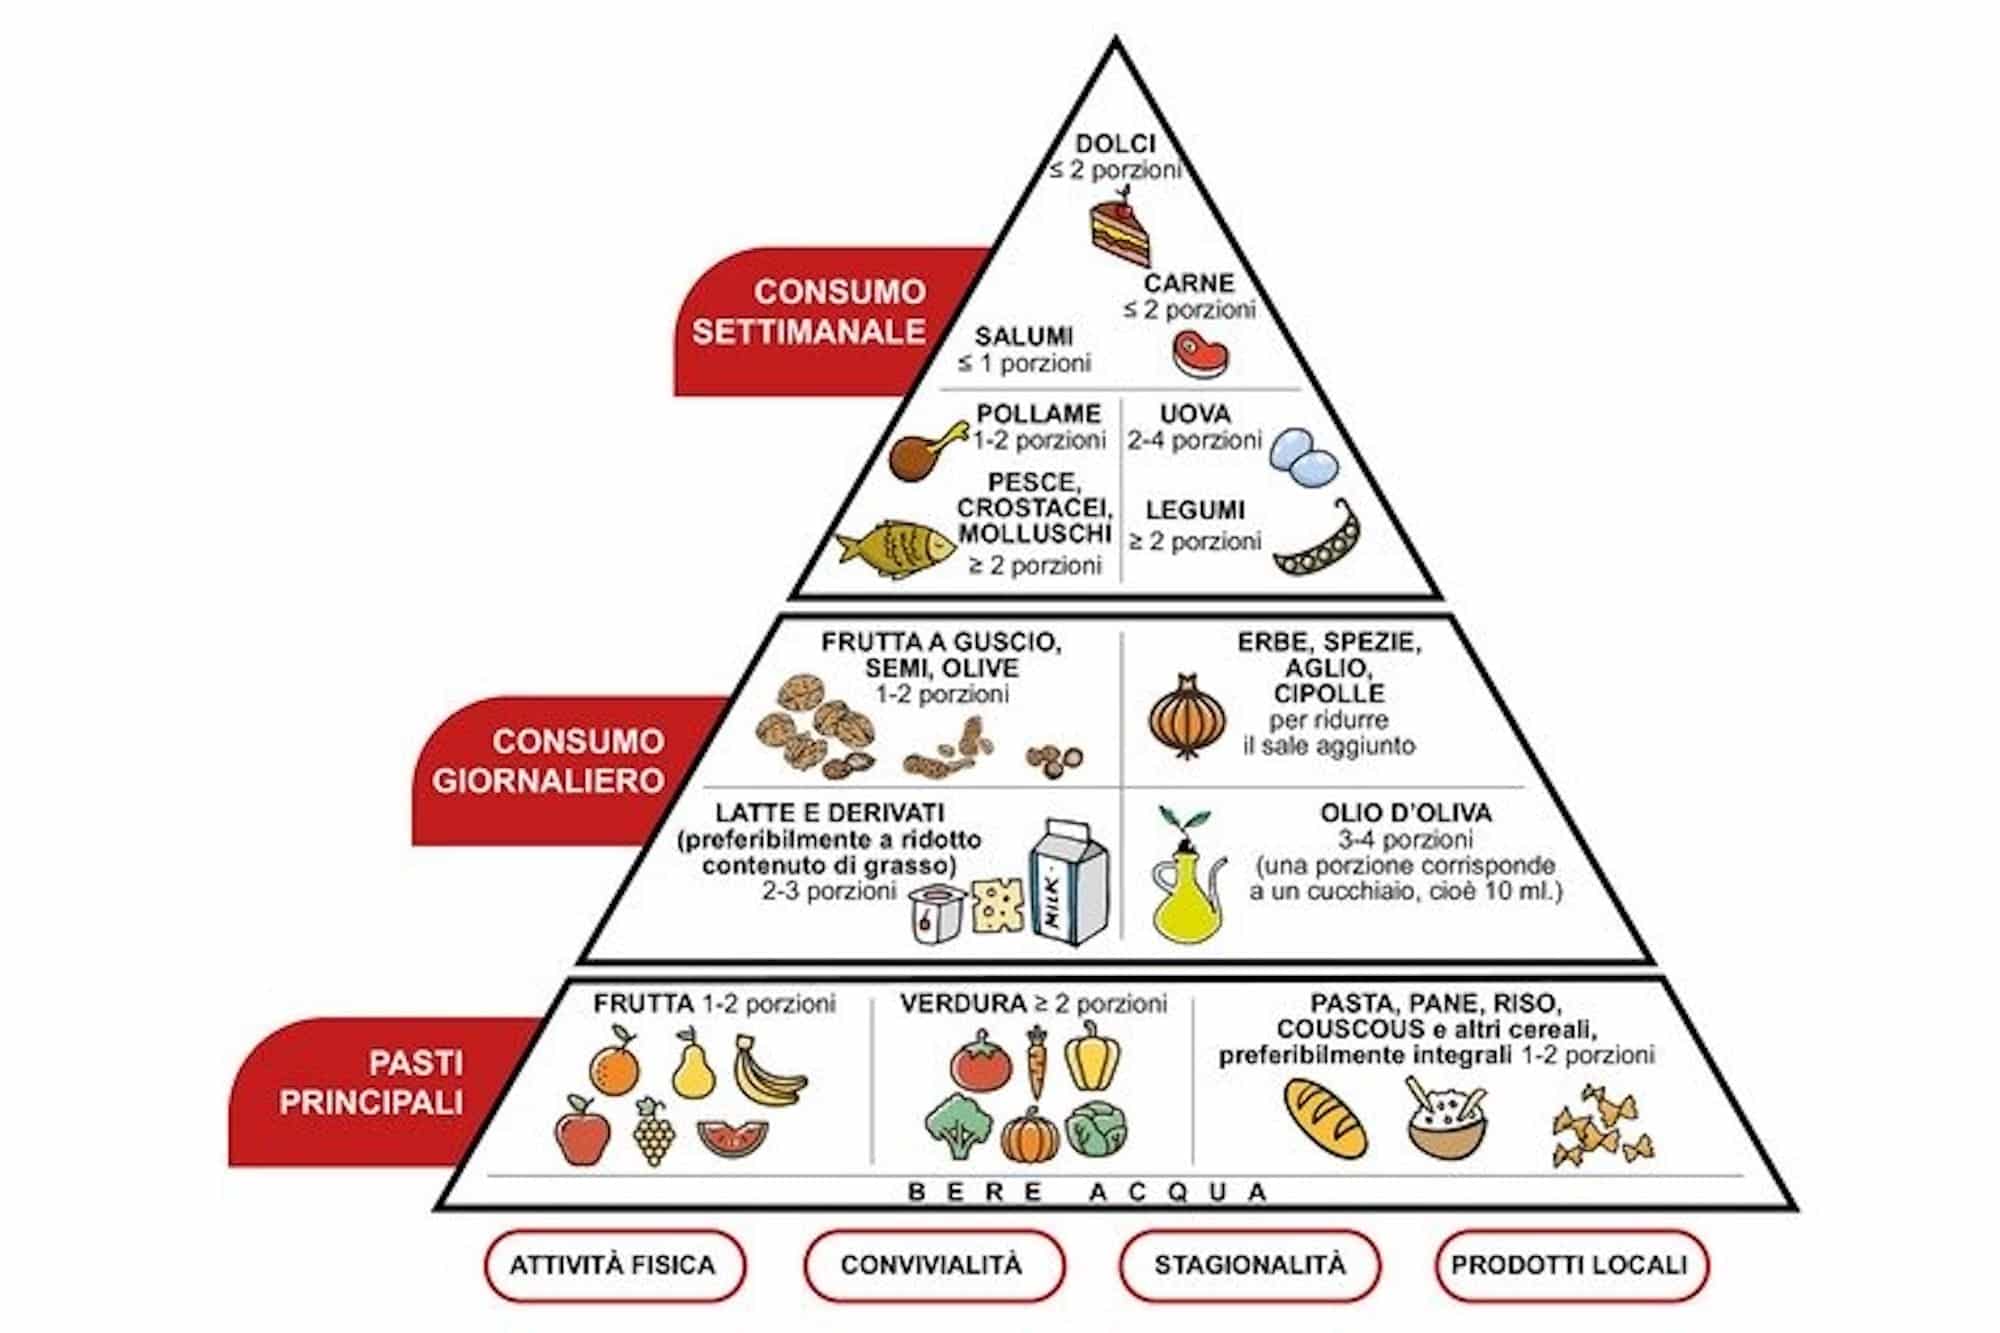 piramide alimentare